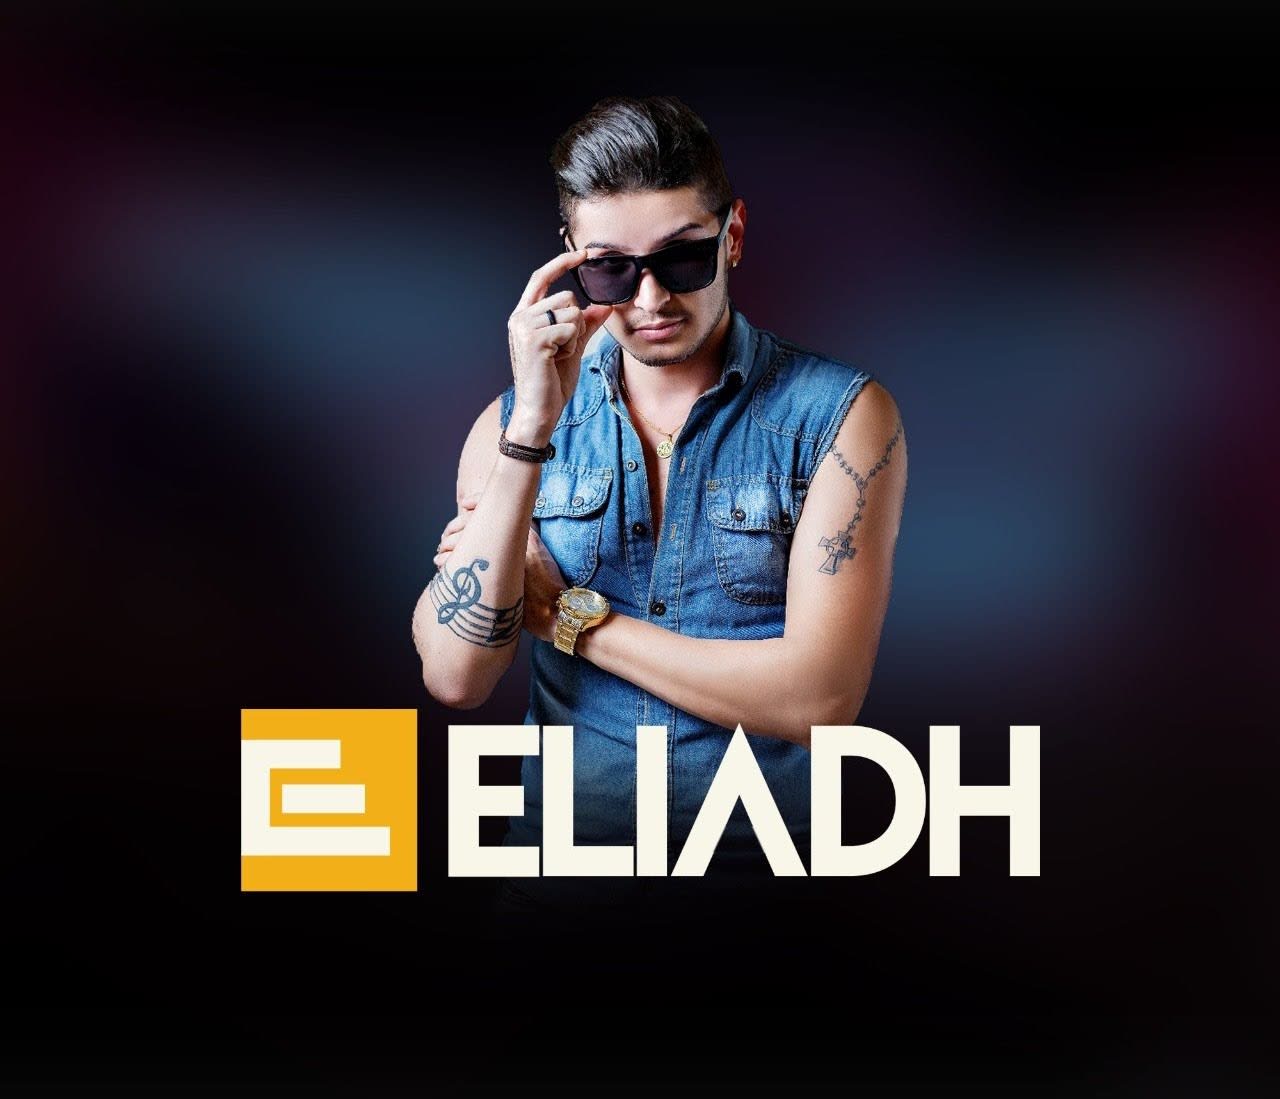 Eliadh